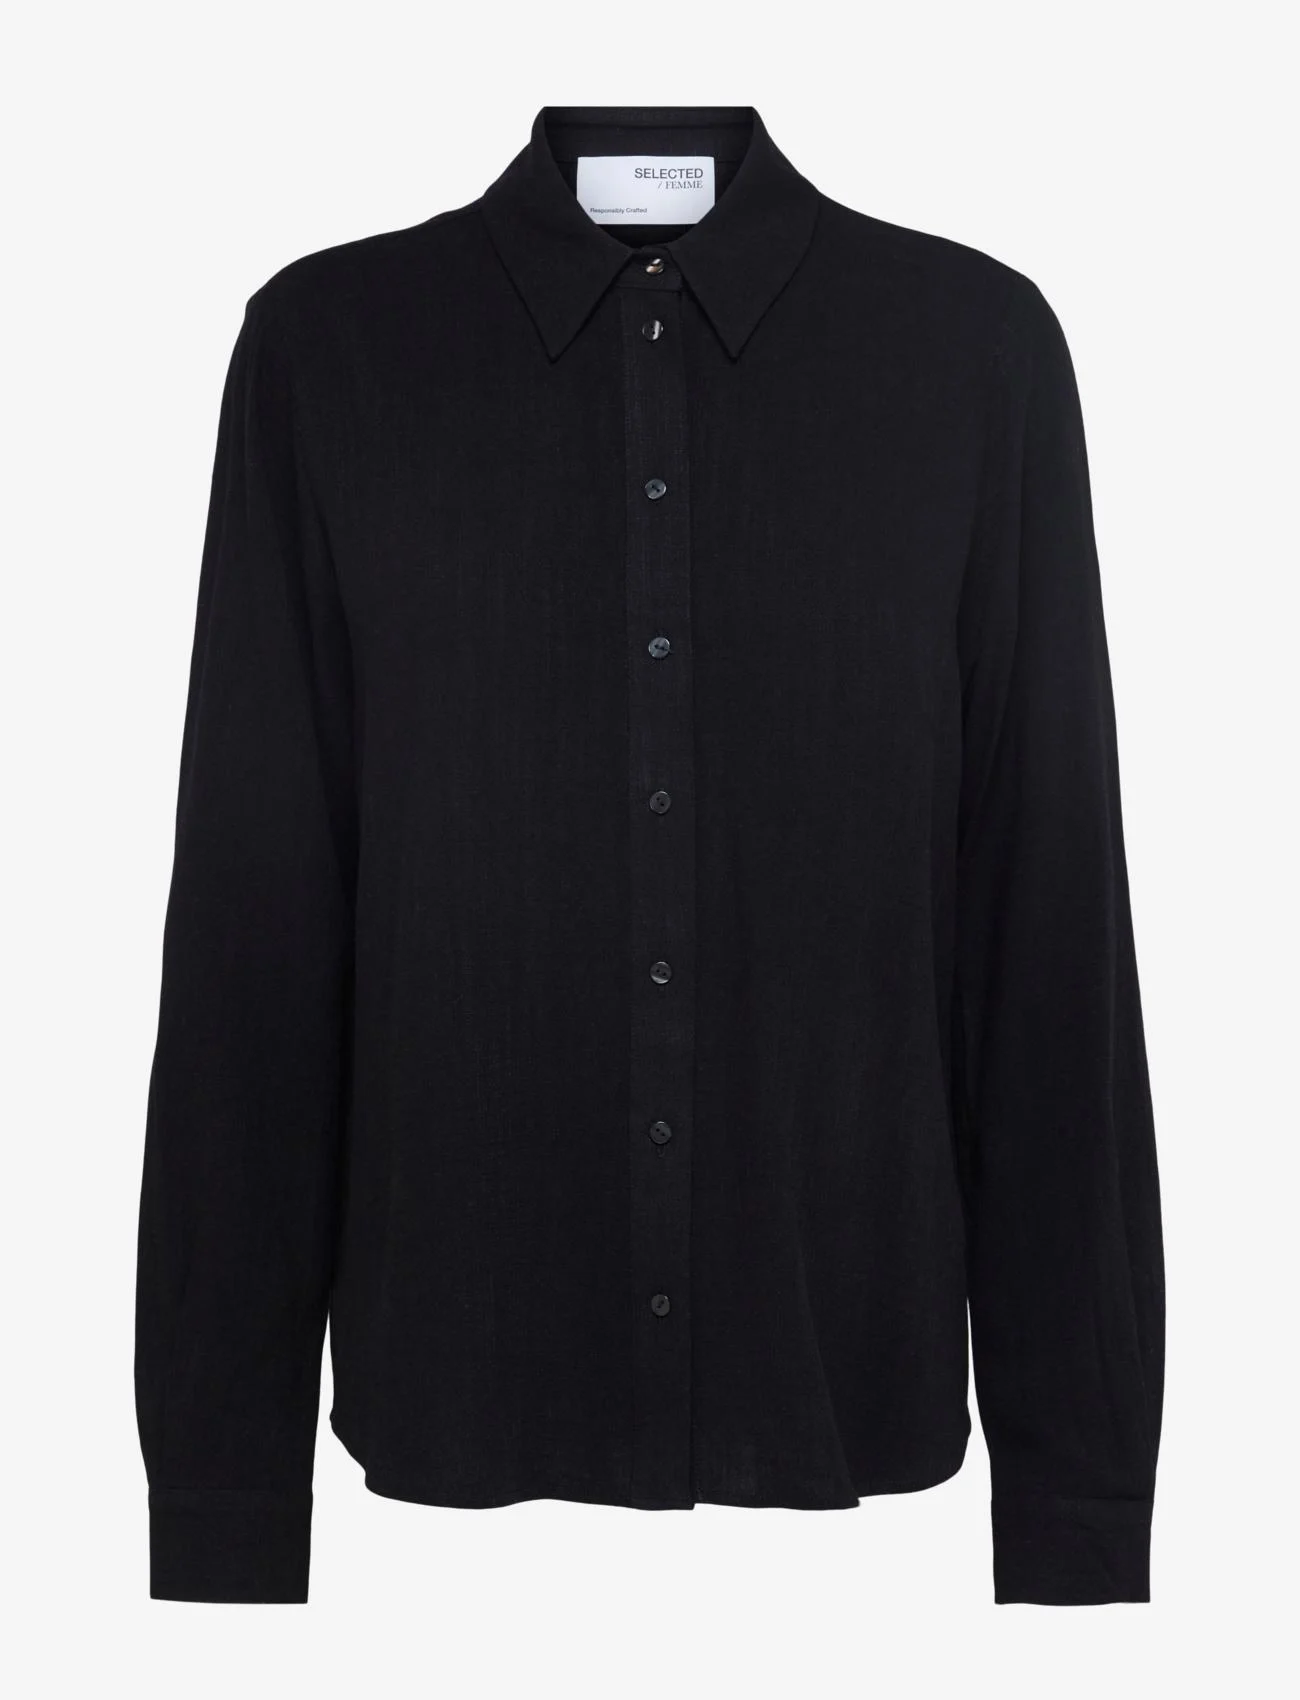 Selected Femme - SLFVIVA LS SHIRT NOOS - långärmade skjortor - black - 0